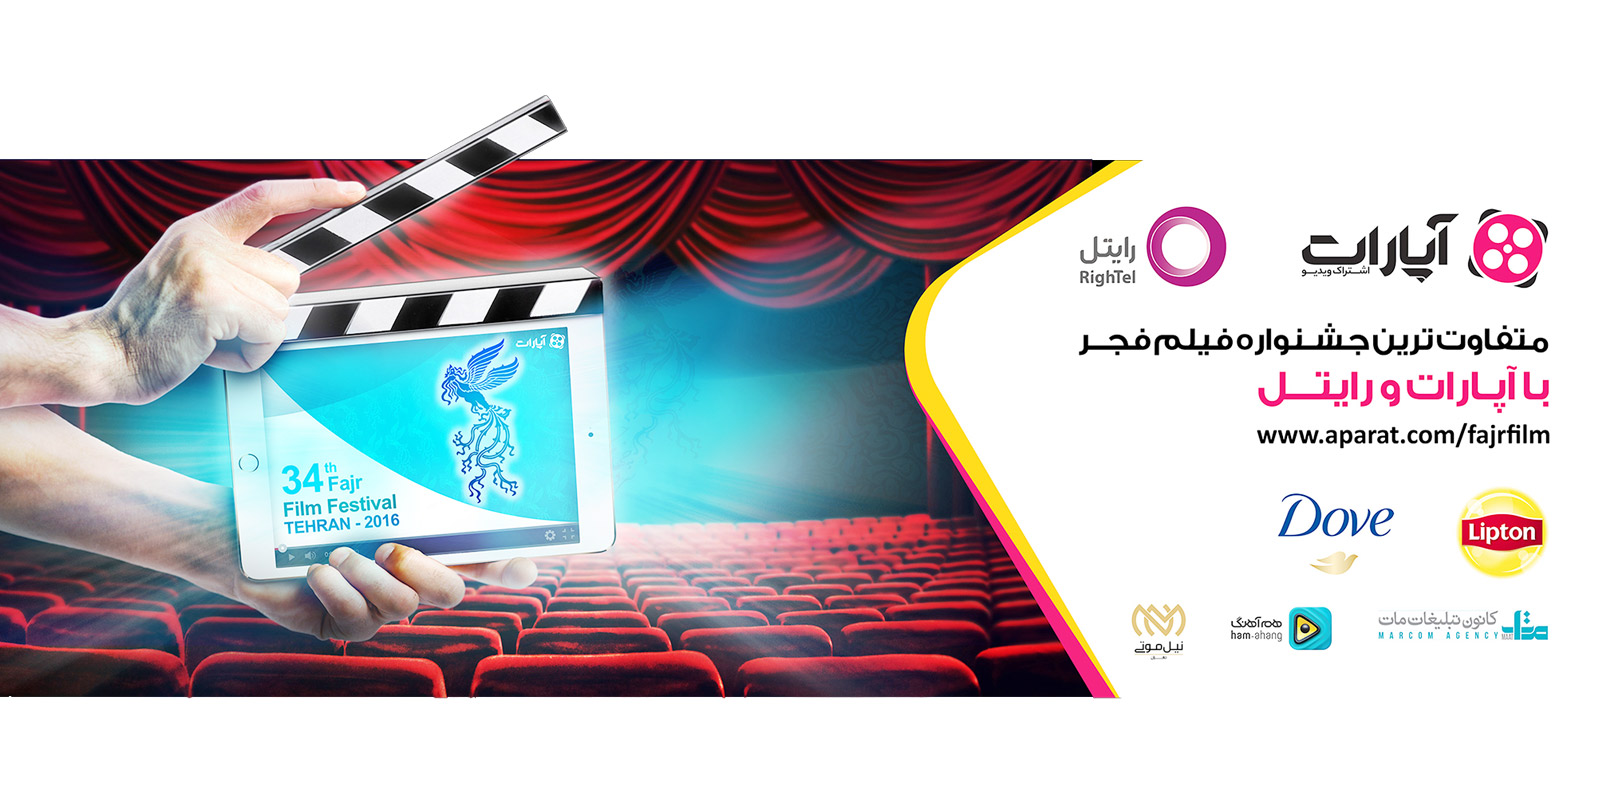 جشنواره فیلم فجر درفضای مجازی